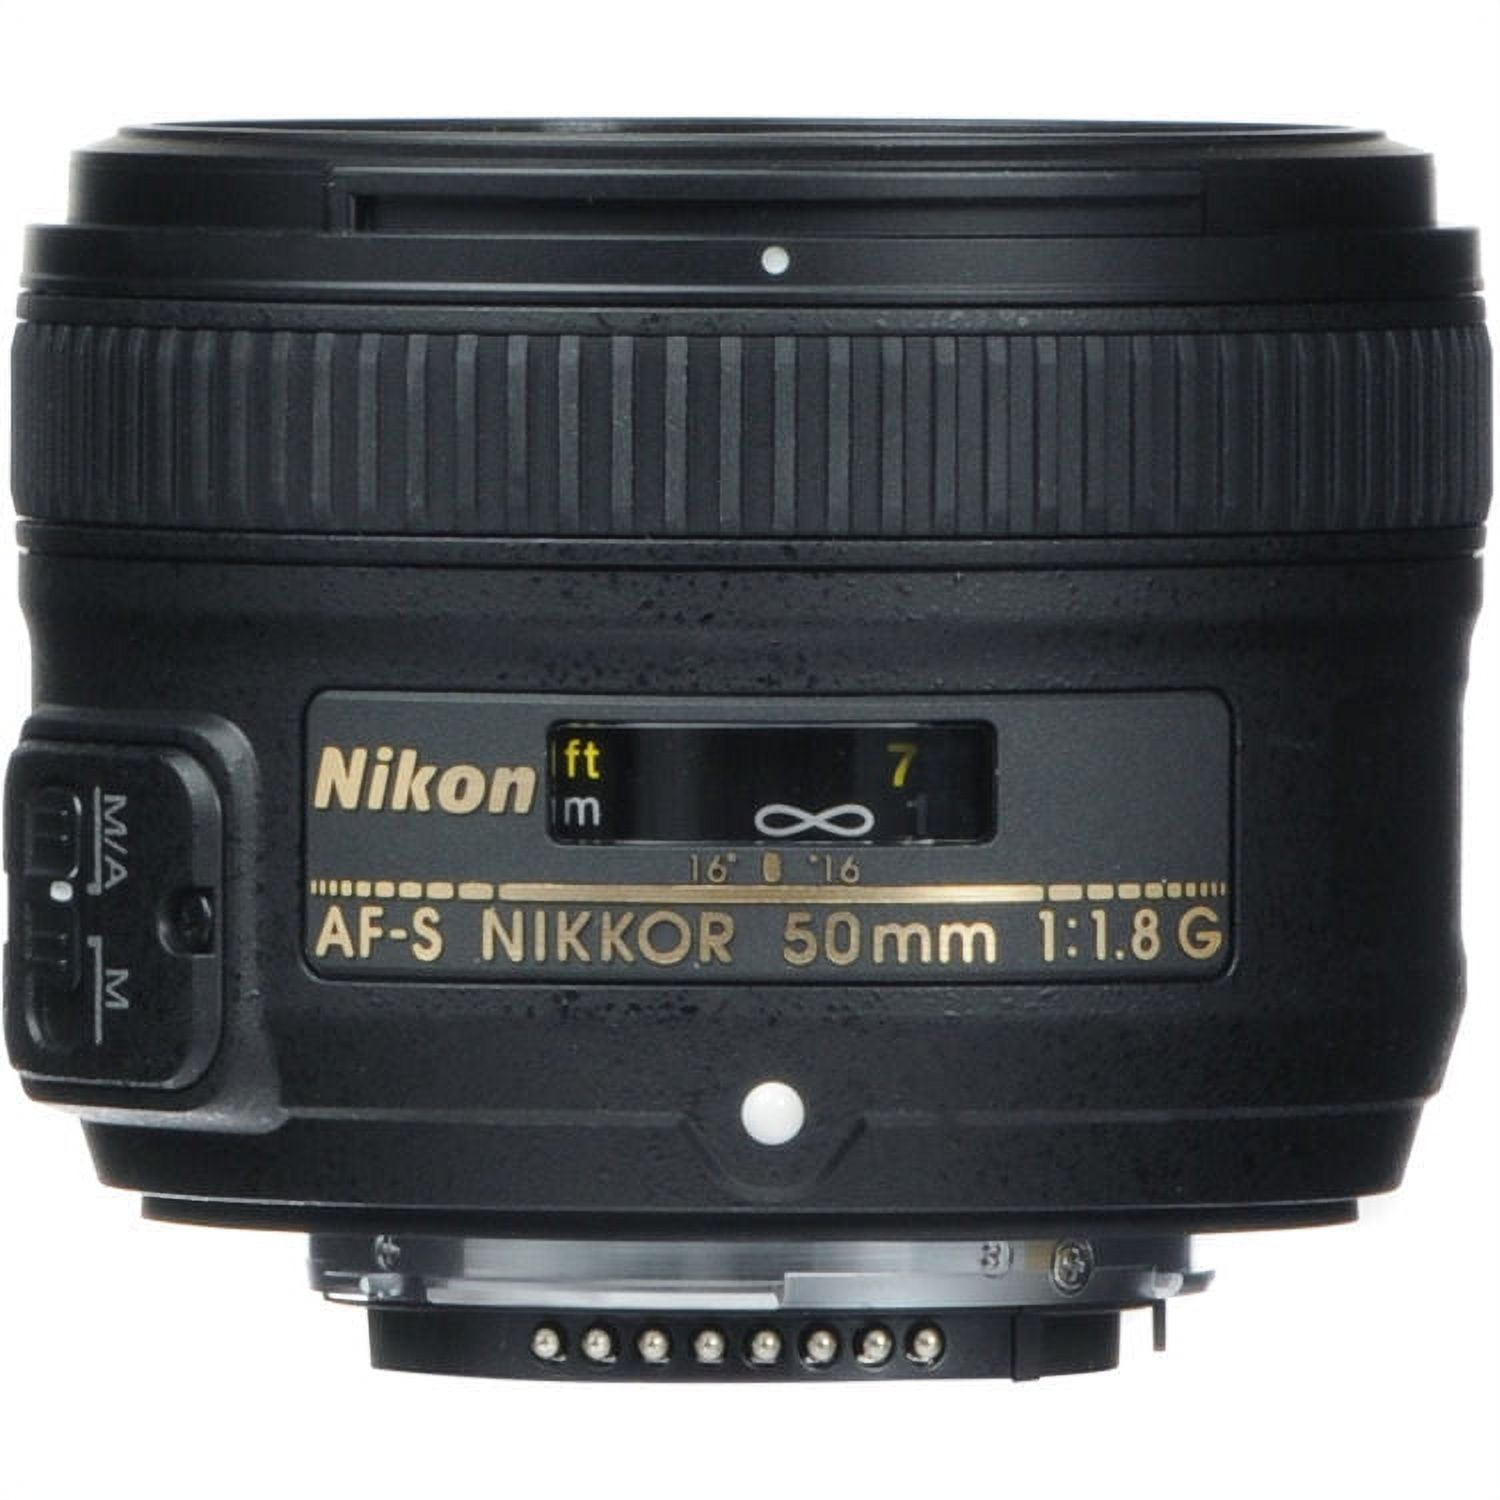 Nikon AF-S FX NIKKOR 50mm f/1.8G Lens with Auto Focus for Nikon DSLR Cameras - image 2 of 4